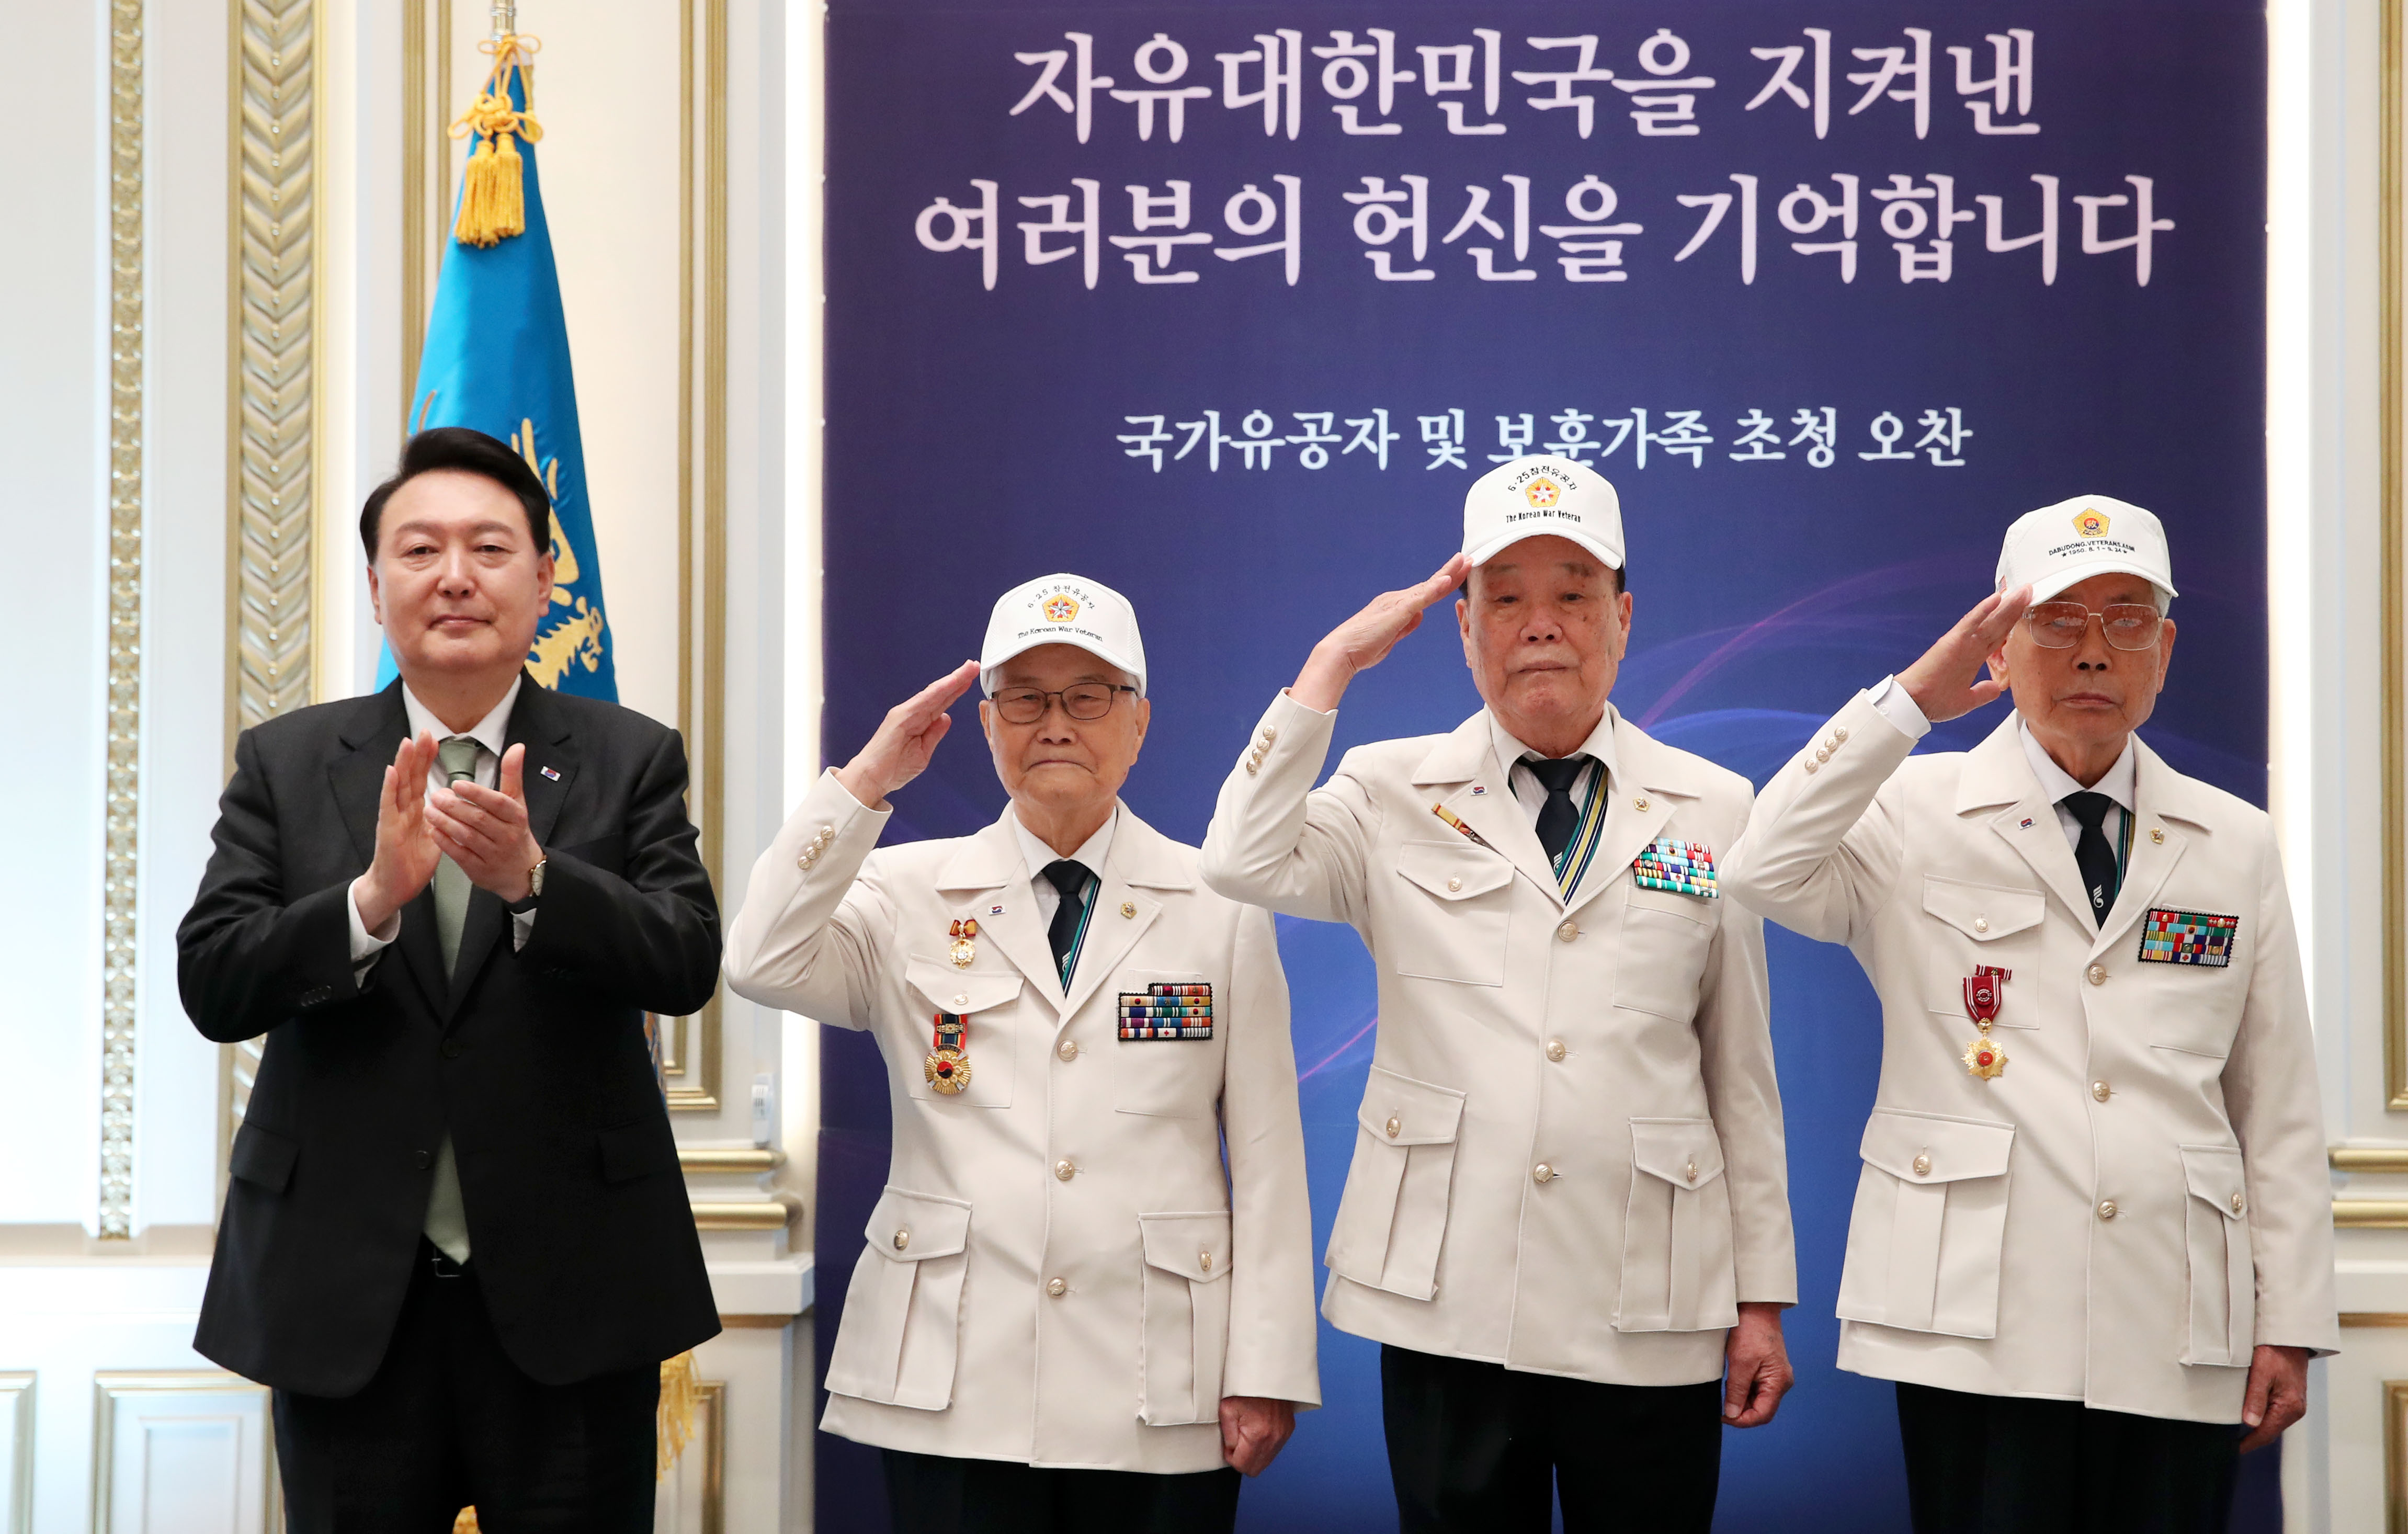 Le président Yoon Suk Yeol applaudit aux côtés de trois membres de l'Association des vétérans de la guerre de Corée, à la maison d’hôtes Yeongbingwan de Cheong Wa Dae, le 14 juin 2023. Le ministère des Patriotes et des Anciens combattants a vu le jour sous l’administraton Yoon, qui a également augmenté les indemnités versées aux anciens combattants de 5,5 %.